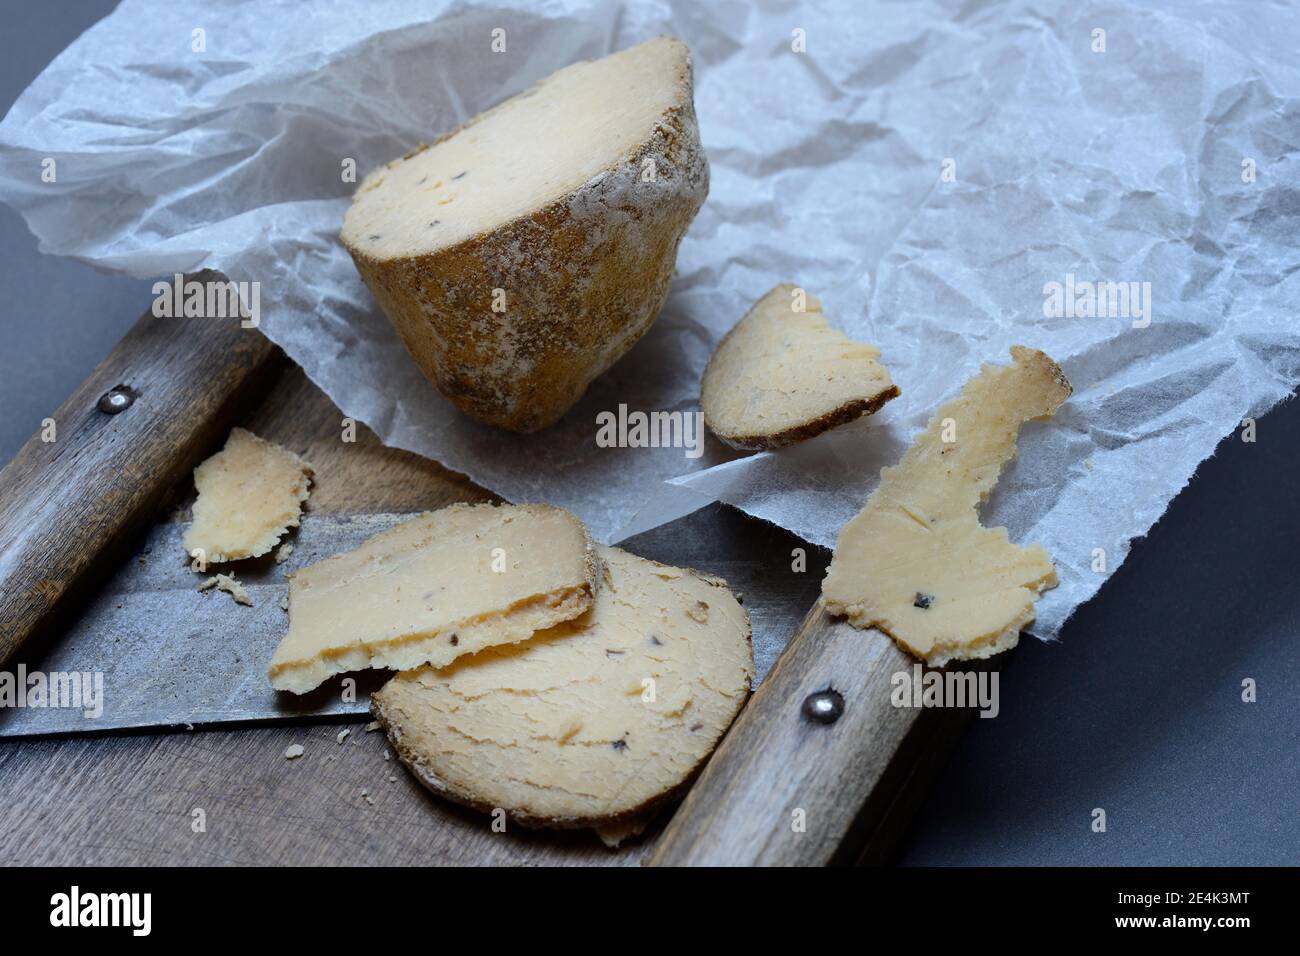 Cheese Belper tuber, Swiss truffle, Swiss truffle, sliced, Switzerland Stock Photo